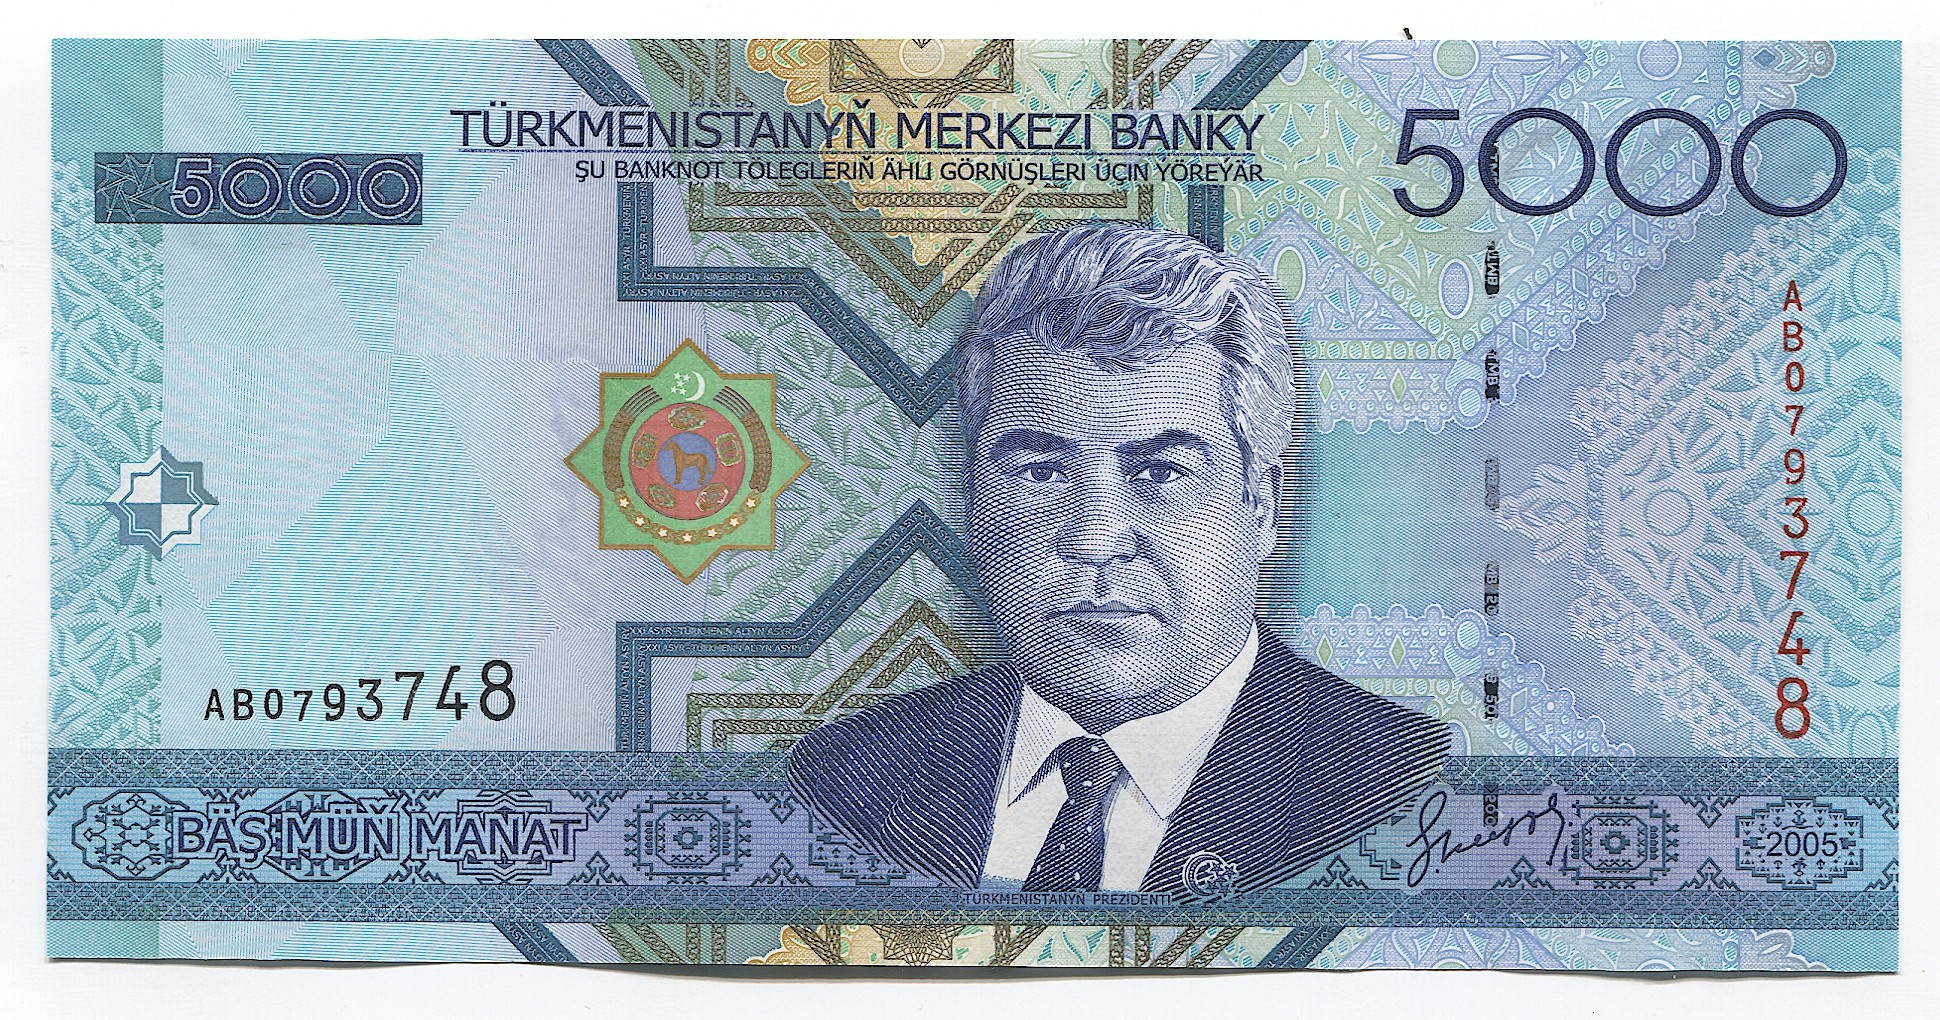 P.21 2005 Turkmenistan 5000 Manat Unc 